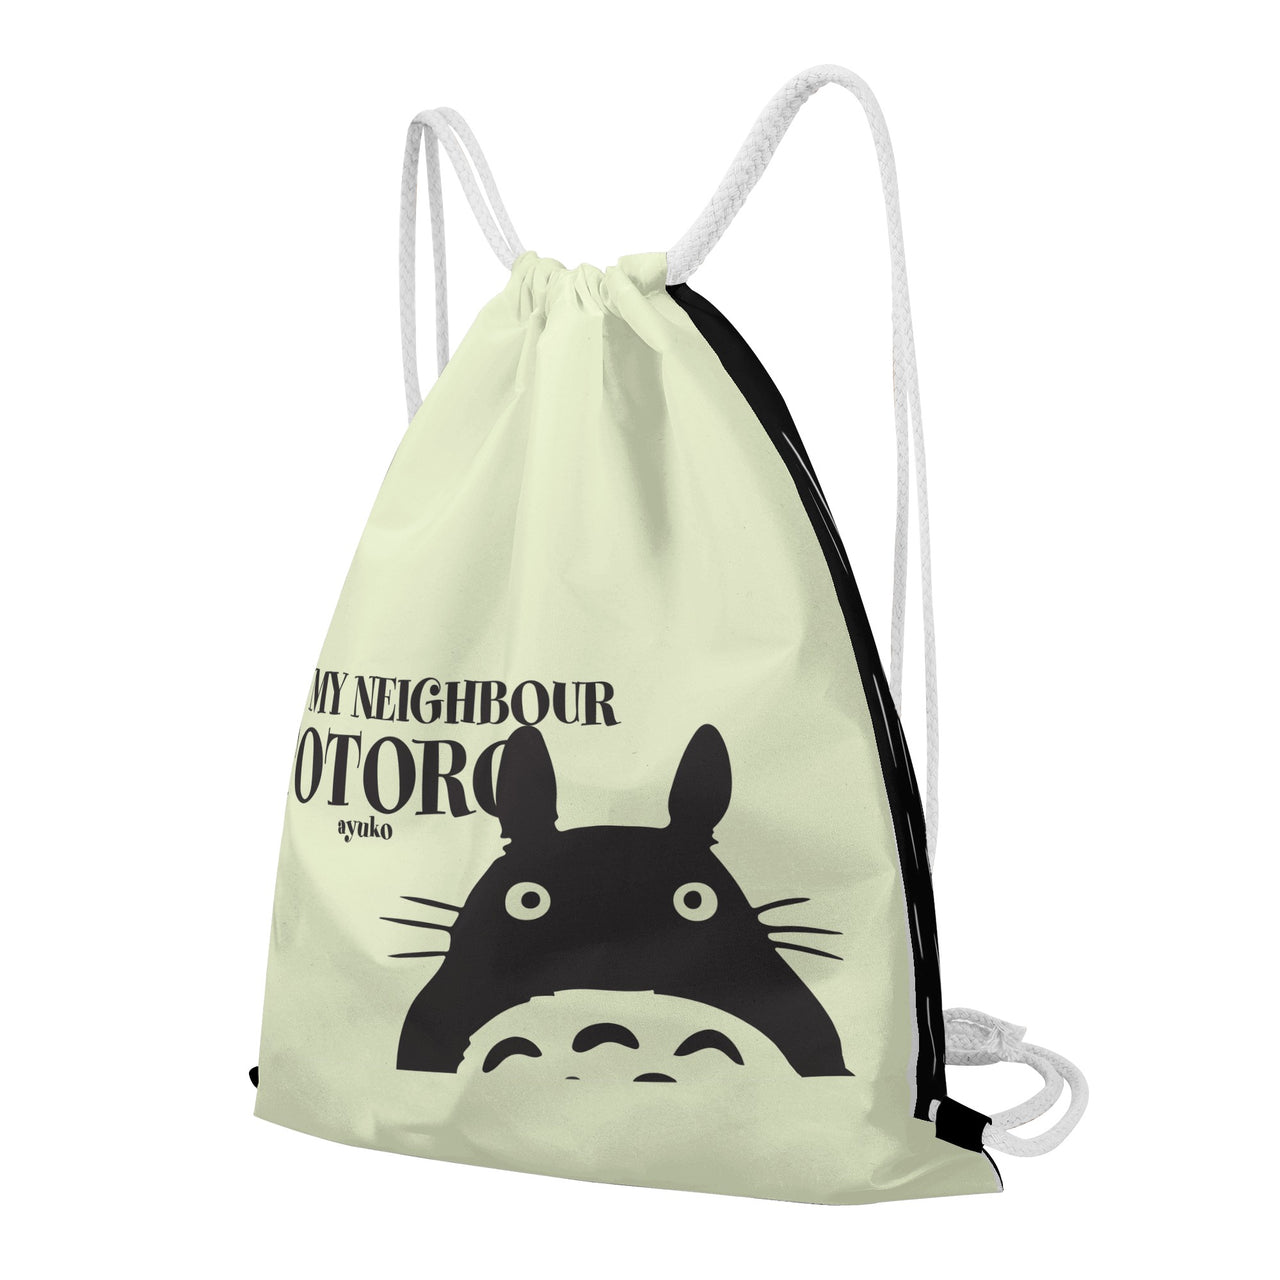 My Neighbor Totoro Anime Drawstring Bag